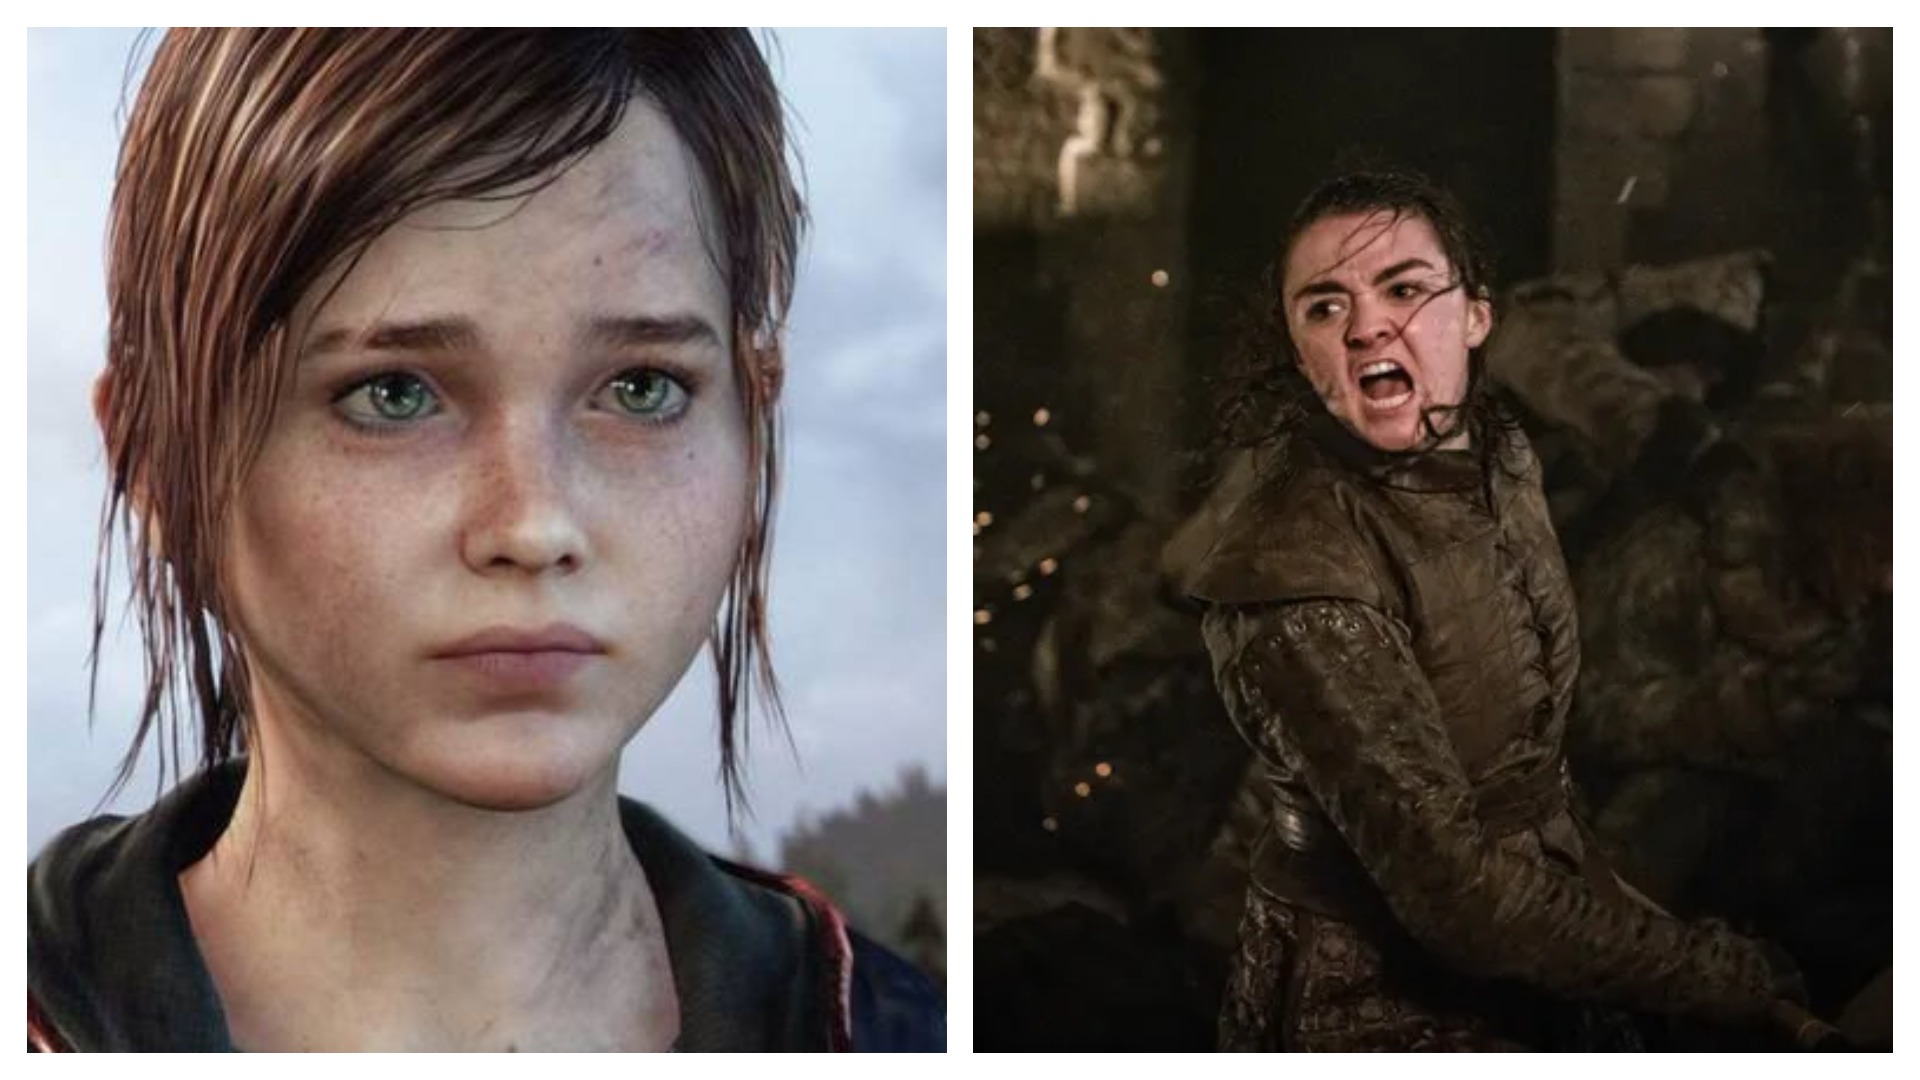 Colagem posiciona lado a lado as personagens Elllie, de The Last Of Us, e Arya Stark, de Game of Thrones